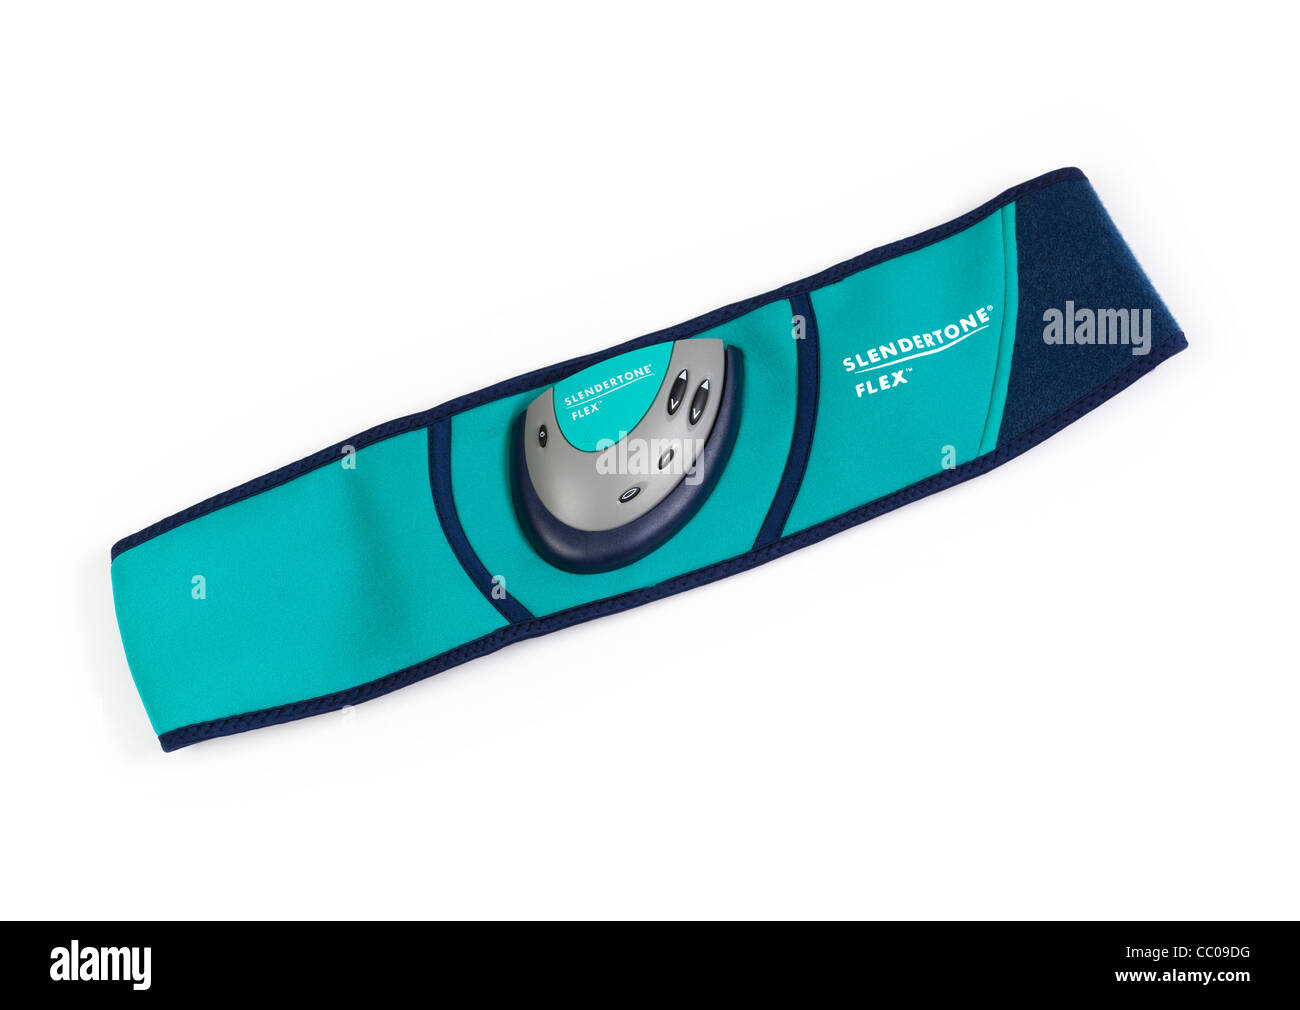 Slendertone toning belt Stock Photo - Alamy